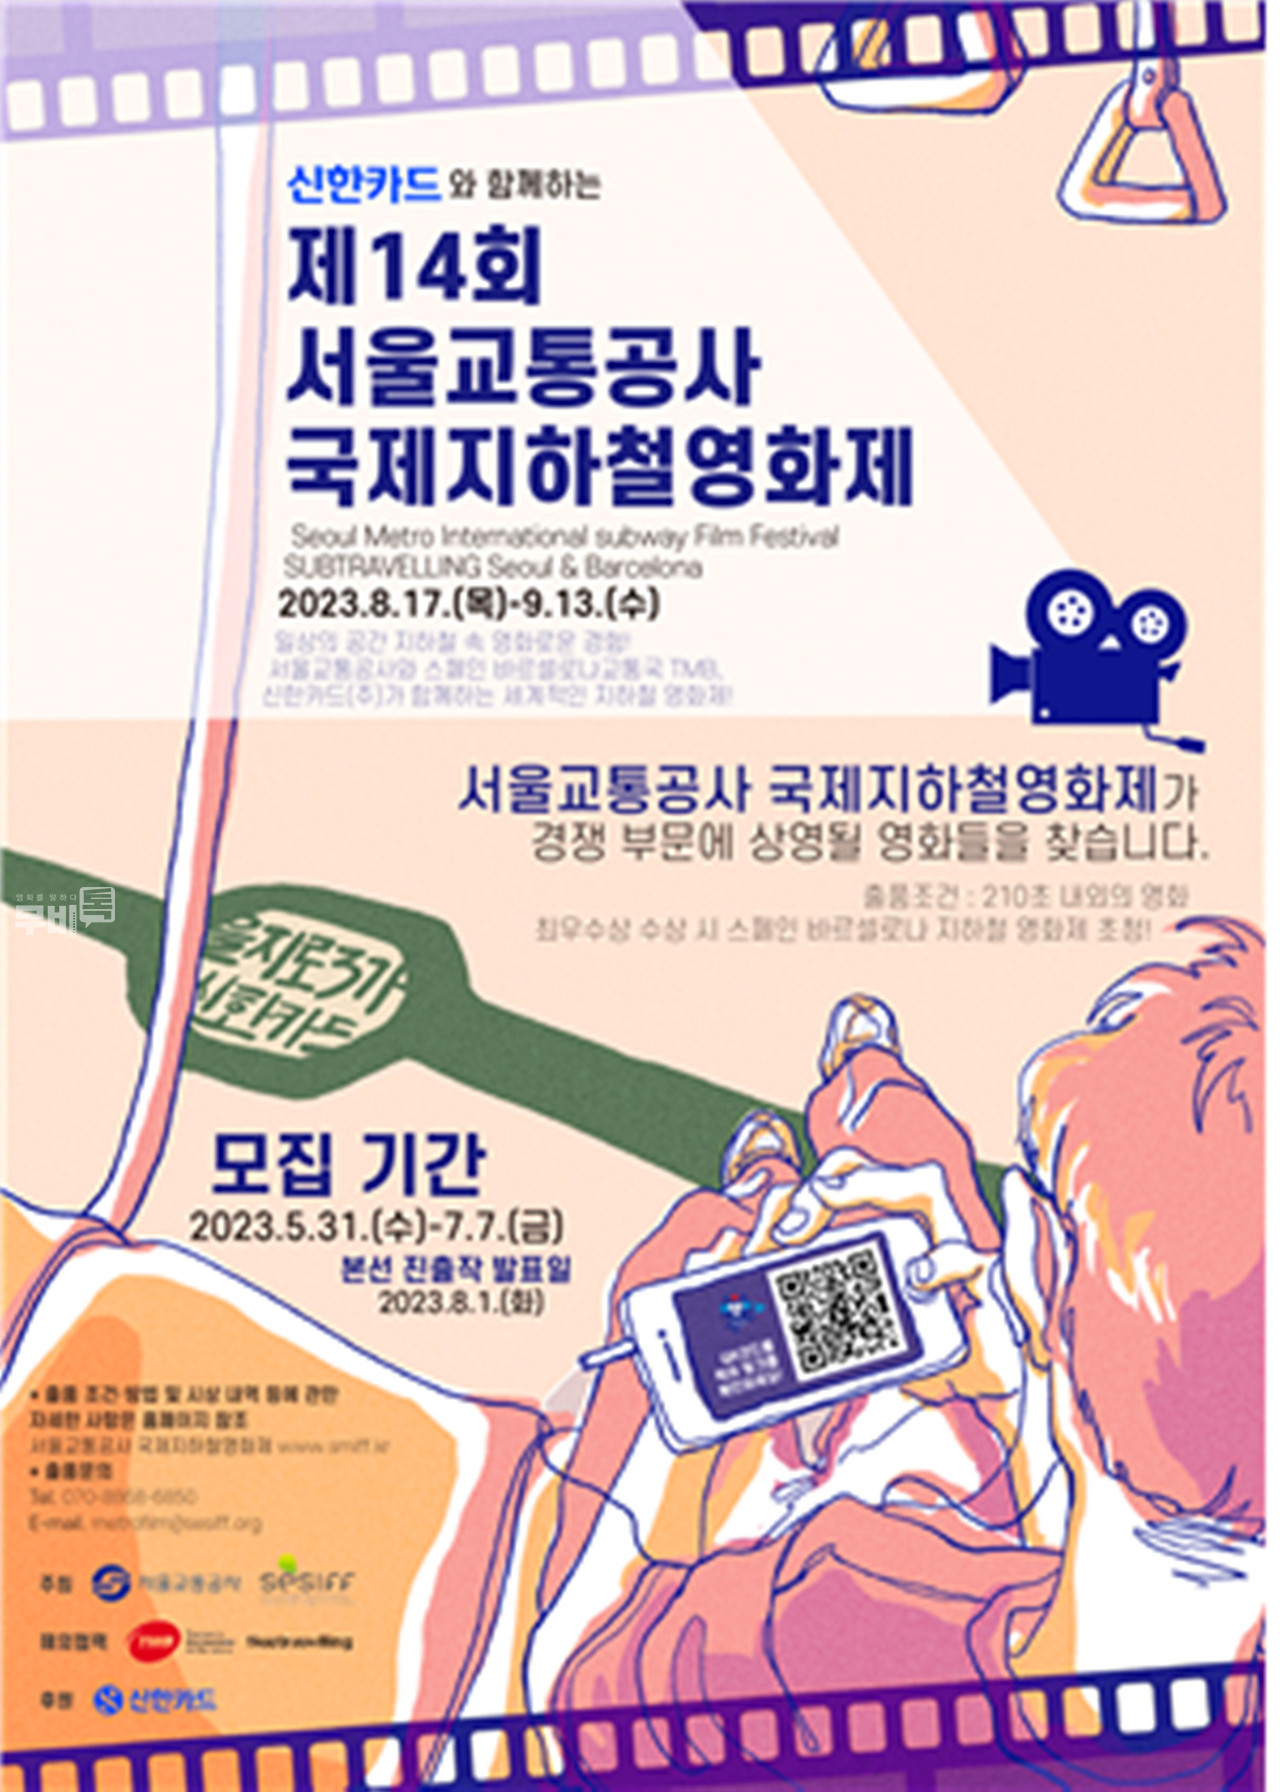 포스터= 제14회 서울교통공사 국제지하철영화제